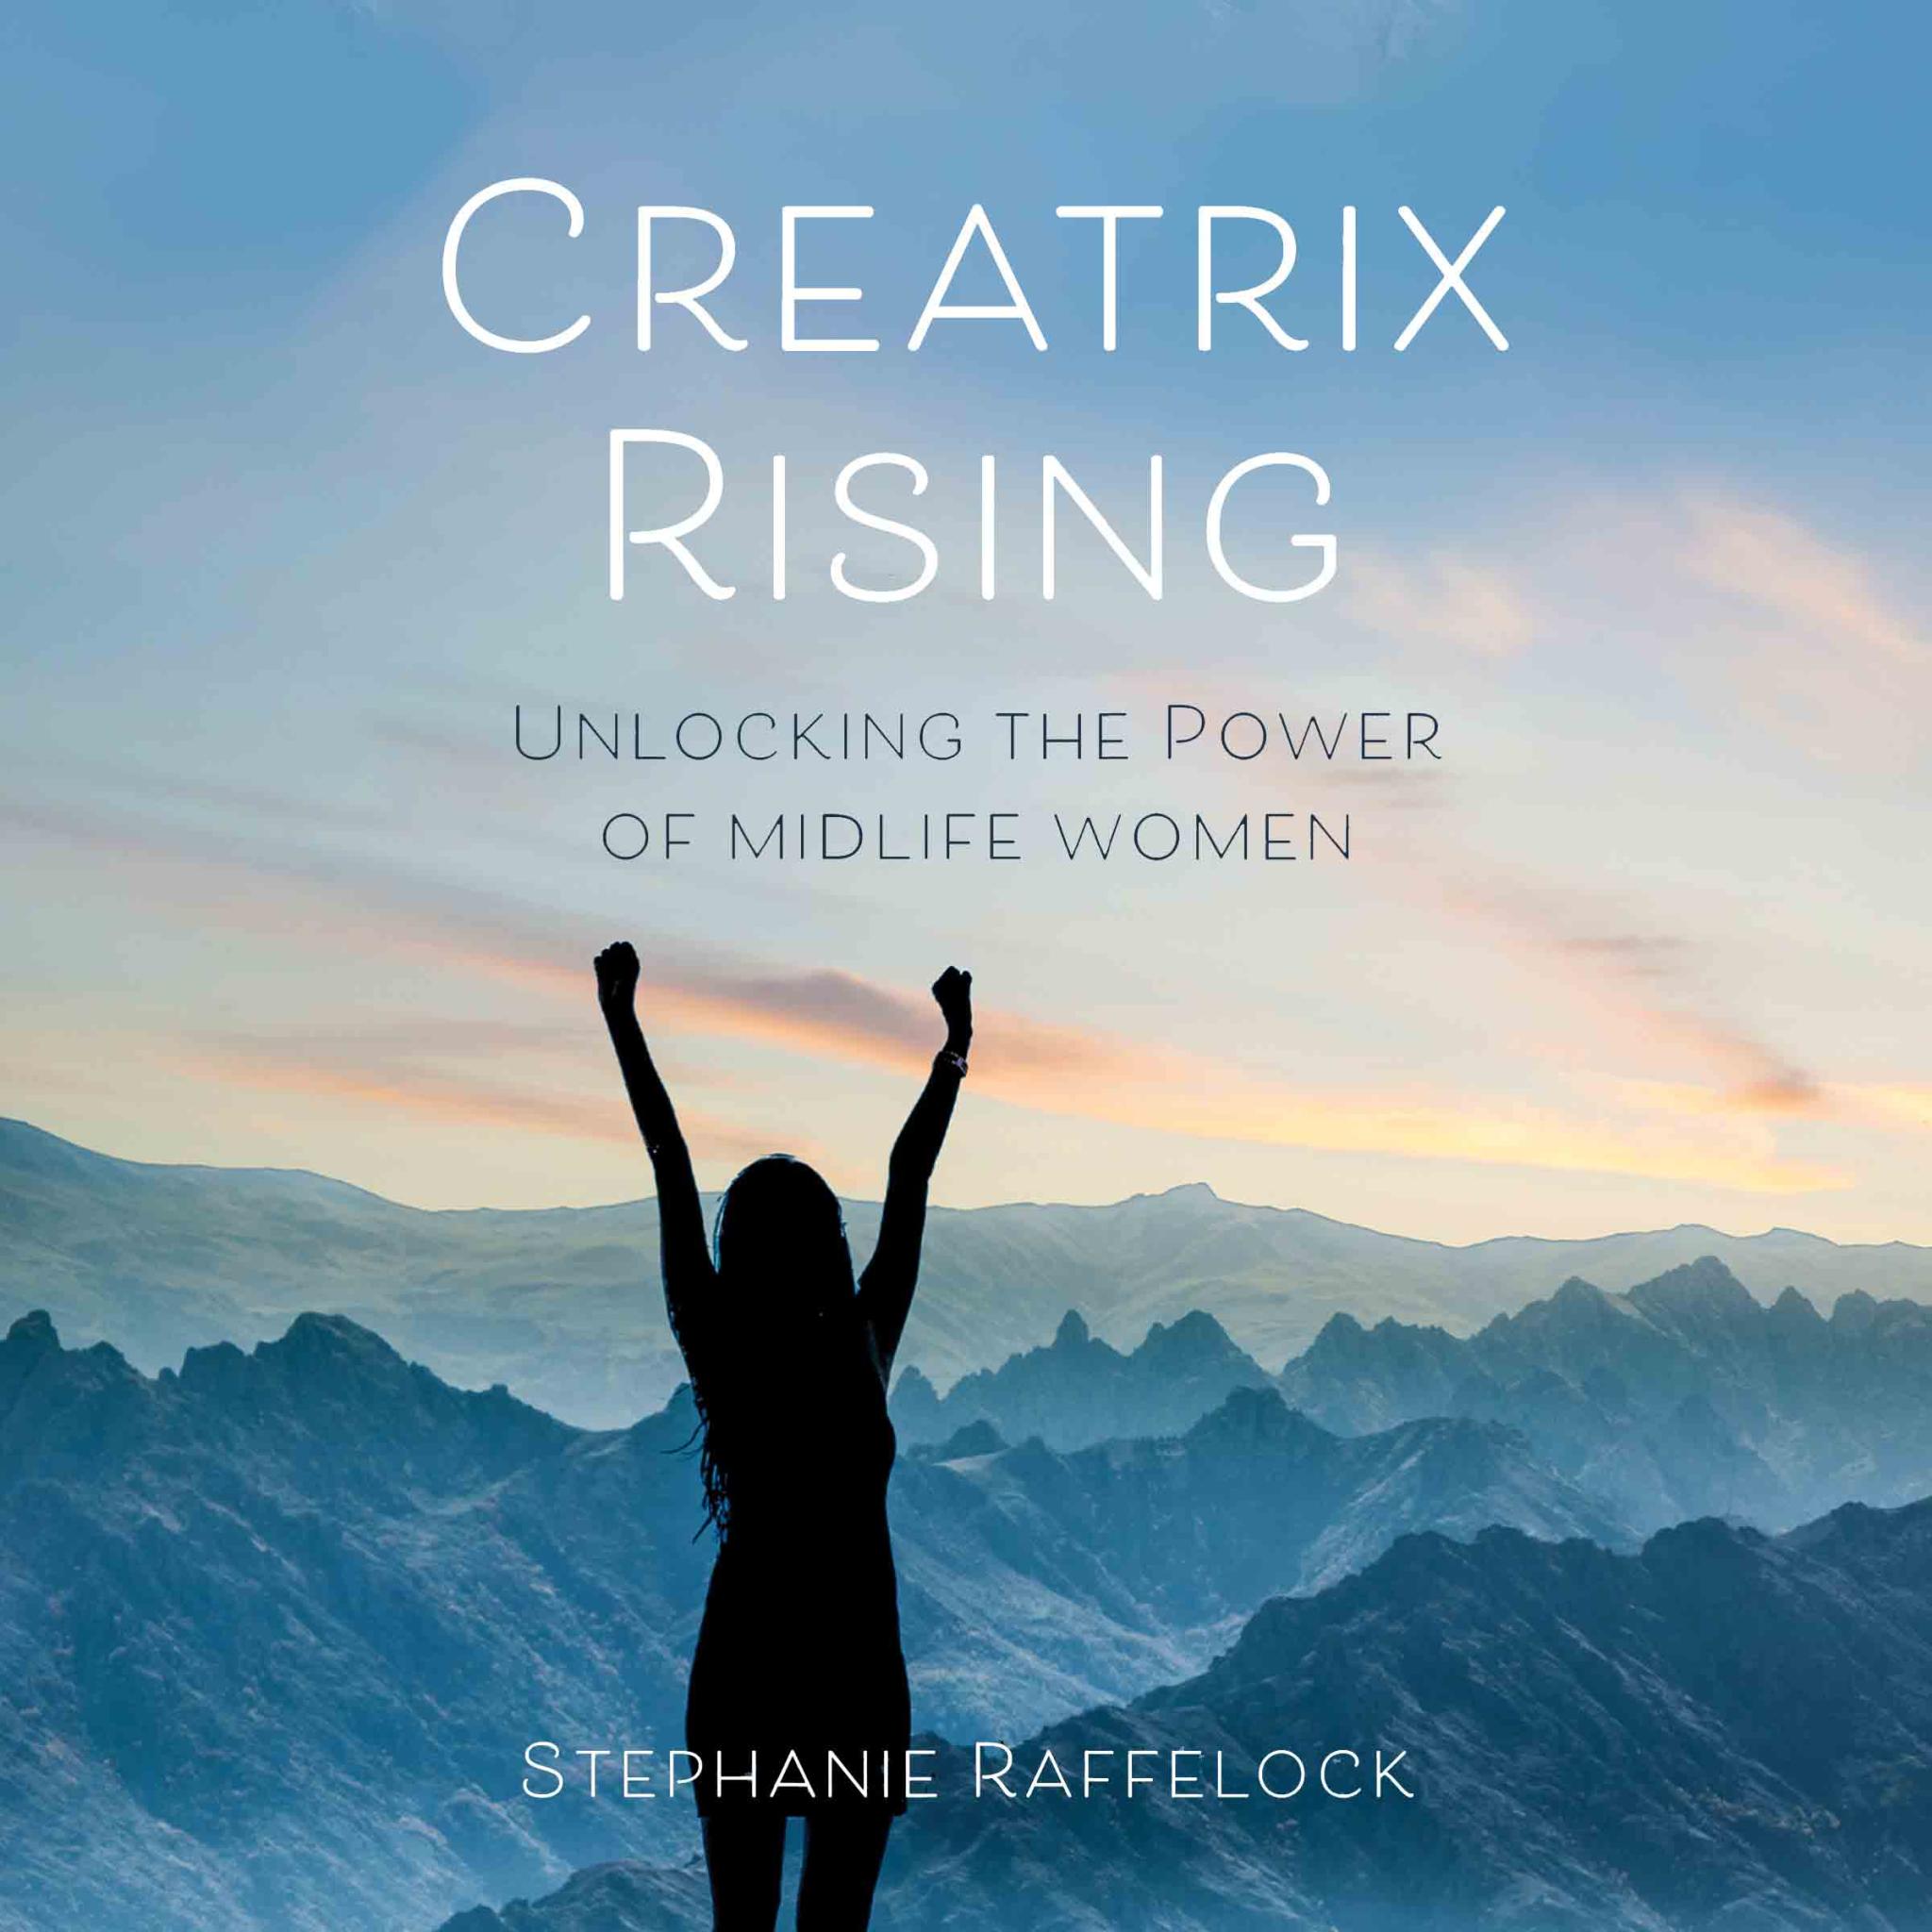 Creatrix Rising by Stephanie Raffelock